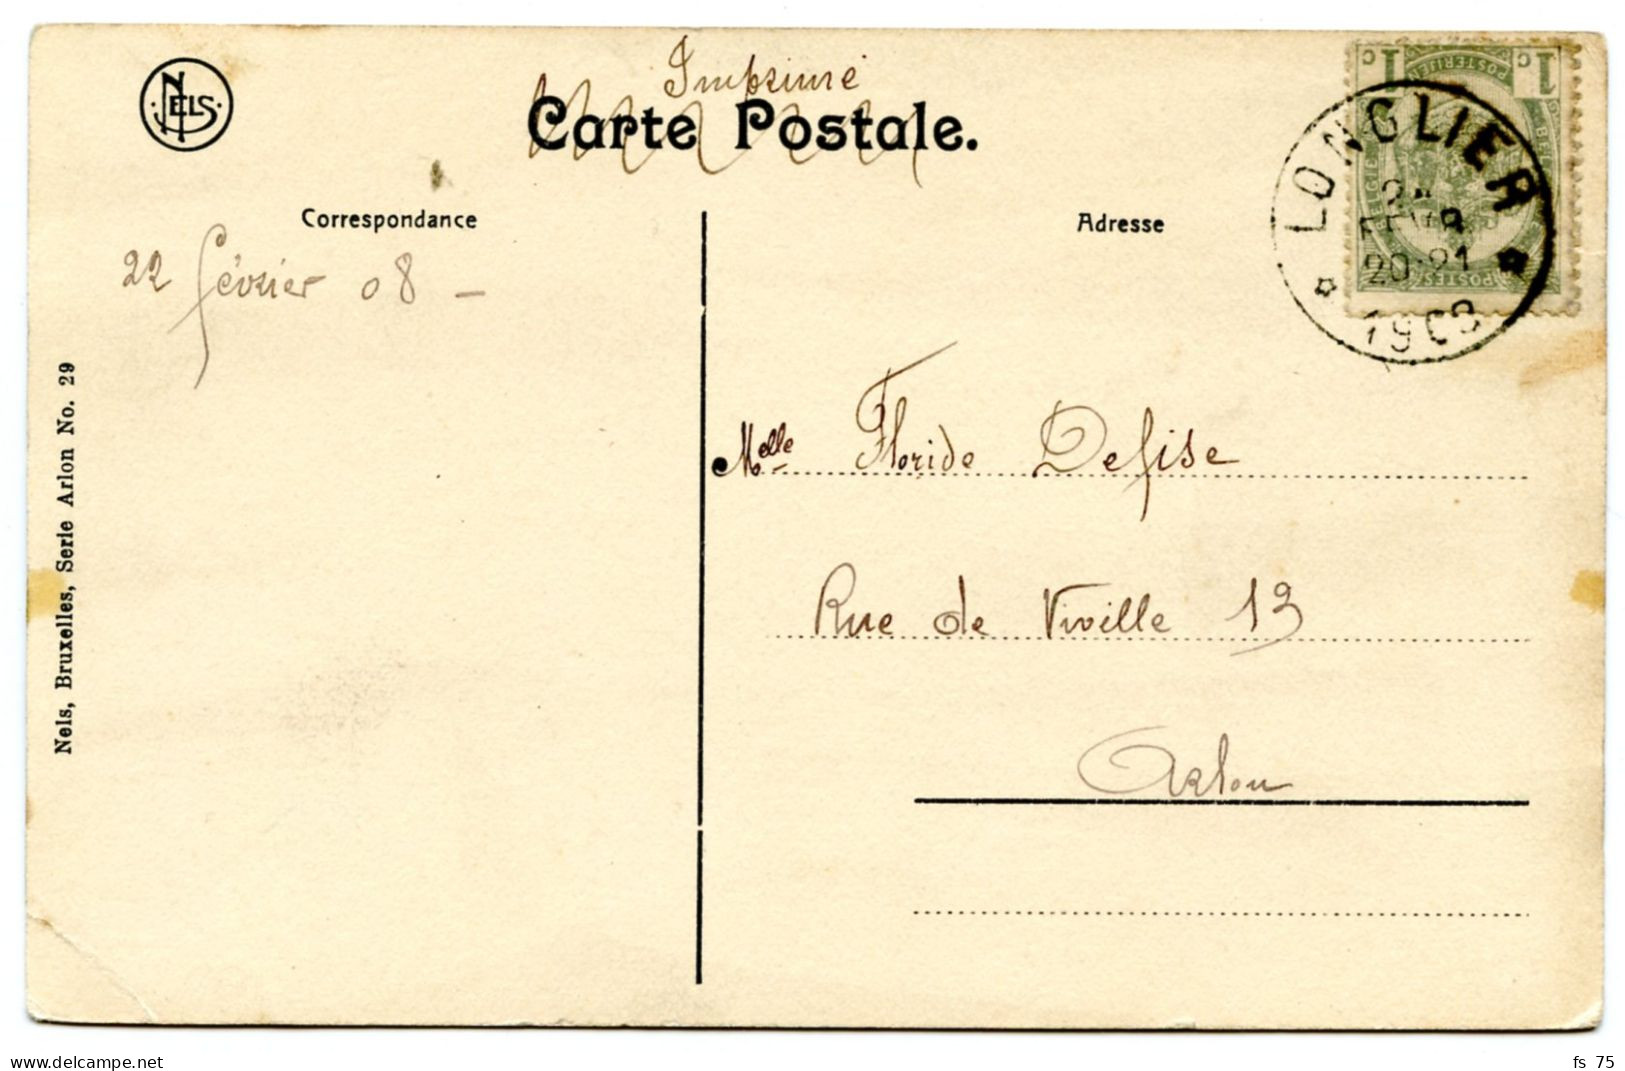 BELGIQUE - COB 53 SIMPLE CERCLE RELAIS A ETOILES LONGLIER SUR CARTE POSTALE, 1908 - Cachets à étoiles